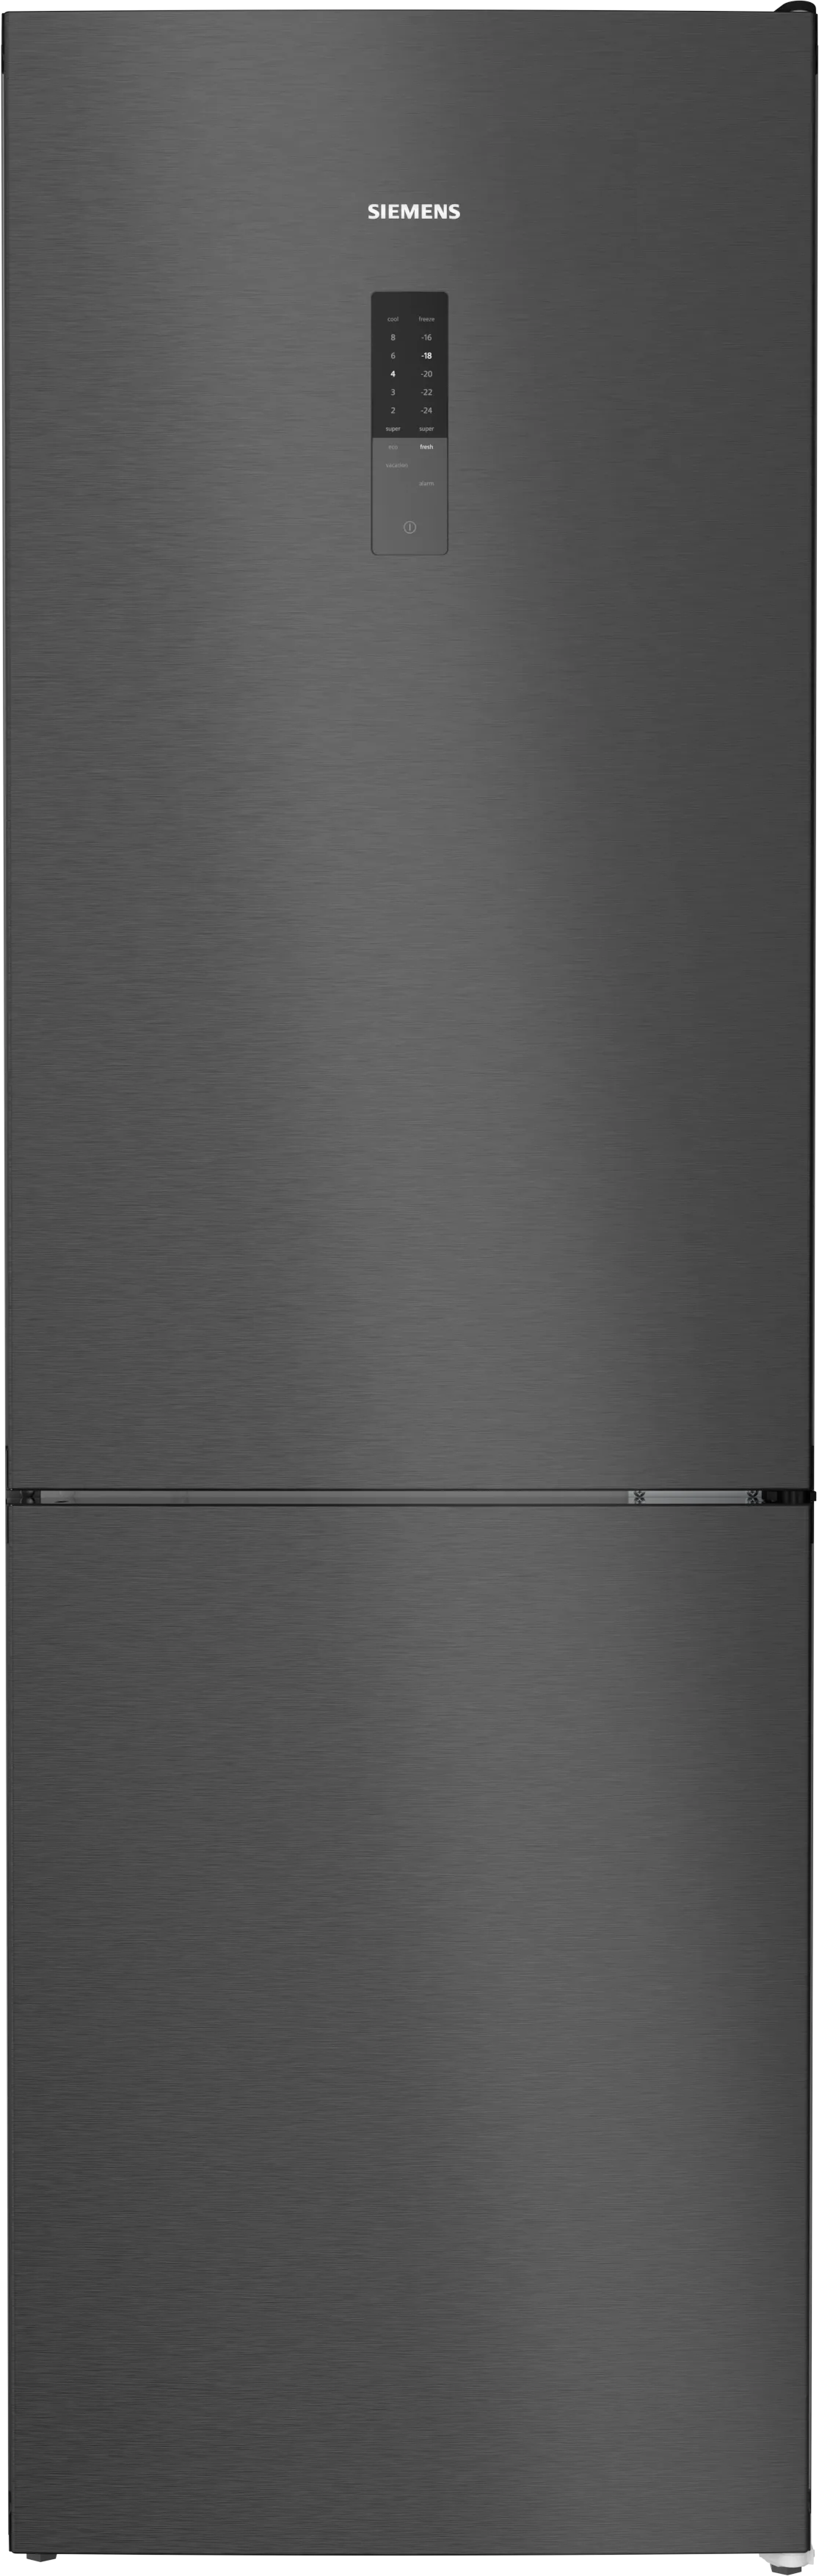 iQ300 Freistehende Kühl-Gefrier-Kombination mit Gefrierbereich unten 186 x 60 cm BlackSteel 